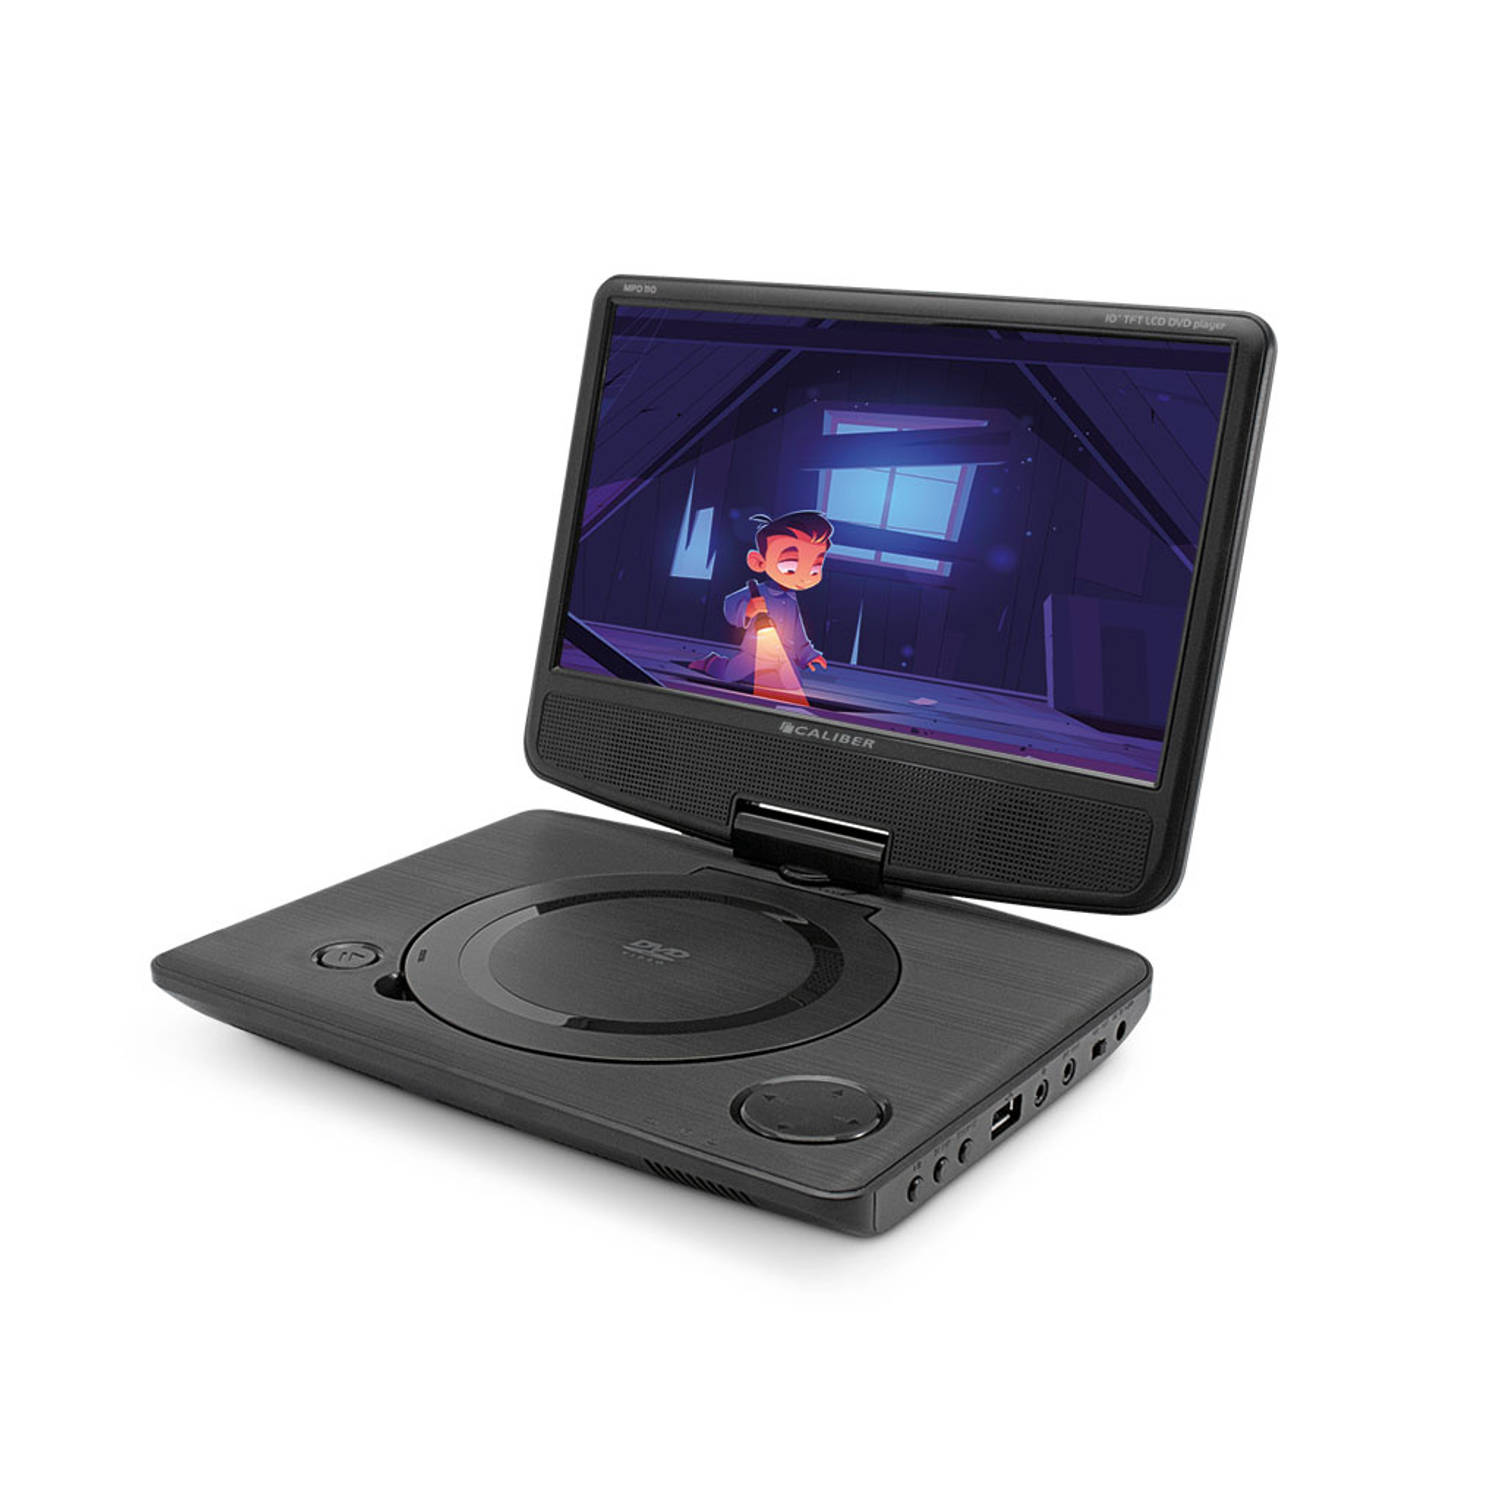 Caliber MPD125 Draagbare DVD-speler 25.4 cm 10 inch Incl. 12 V auto-aansluitkabel, Werkt op een accu